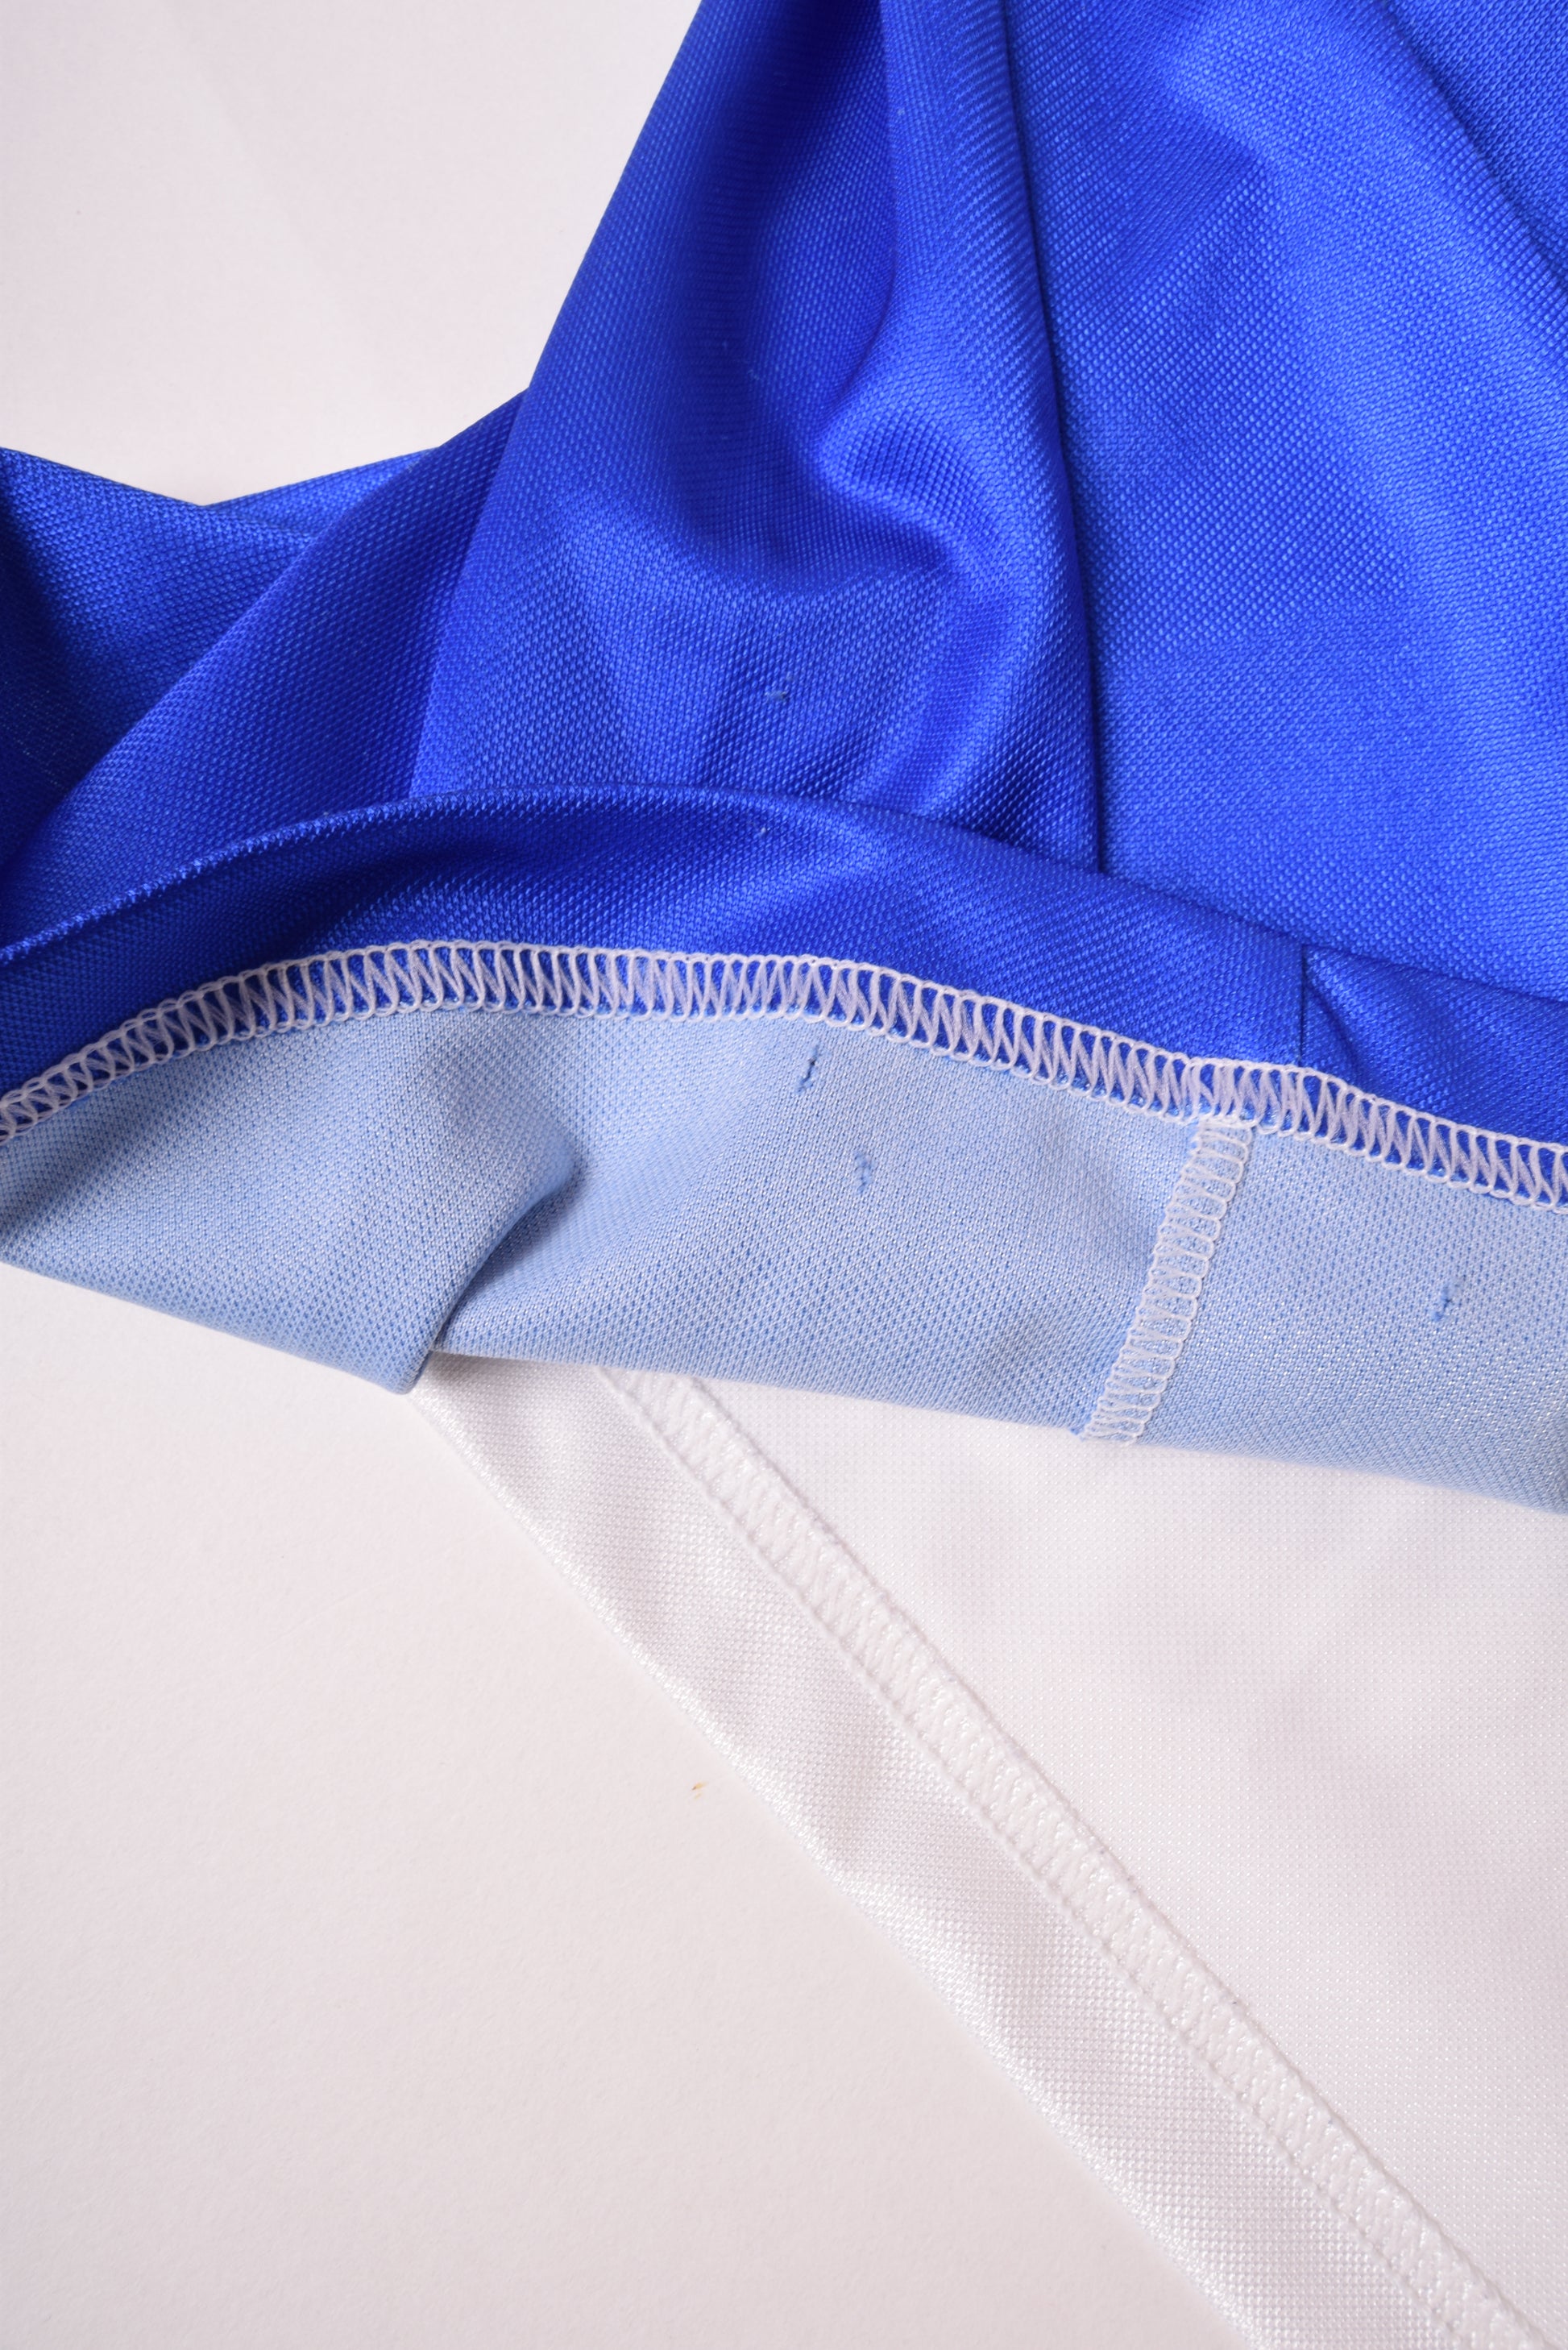 Vintage Grasshopper Club Zurich Adidas 1992-1994 Home Football Shirt White Blue Beretta Size L Made in Switzerland